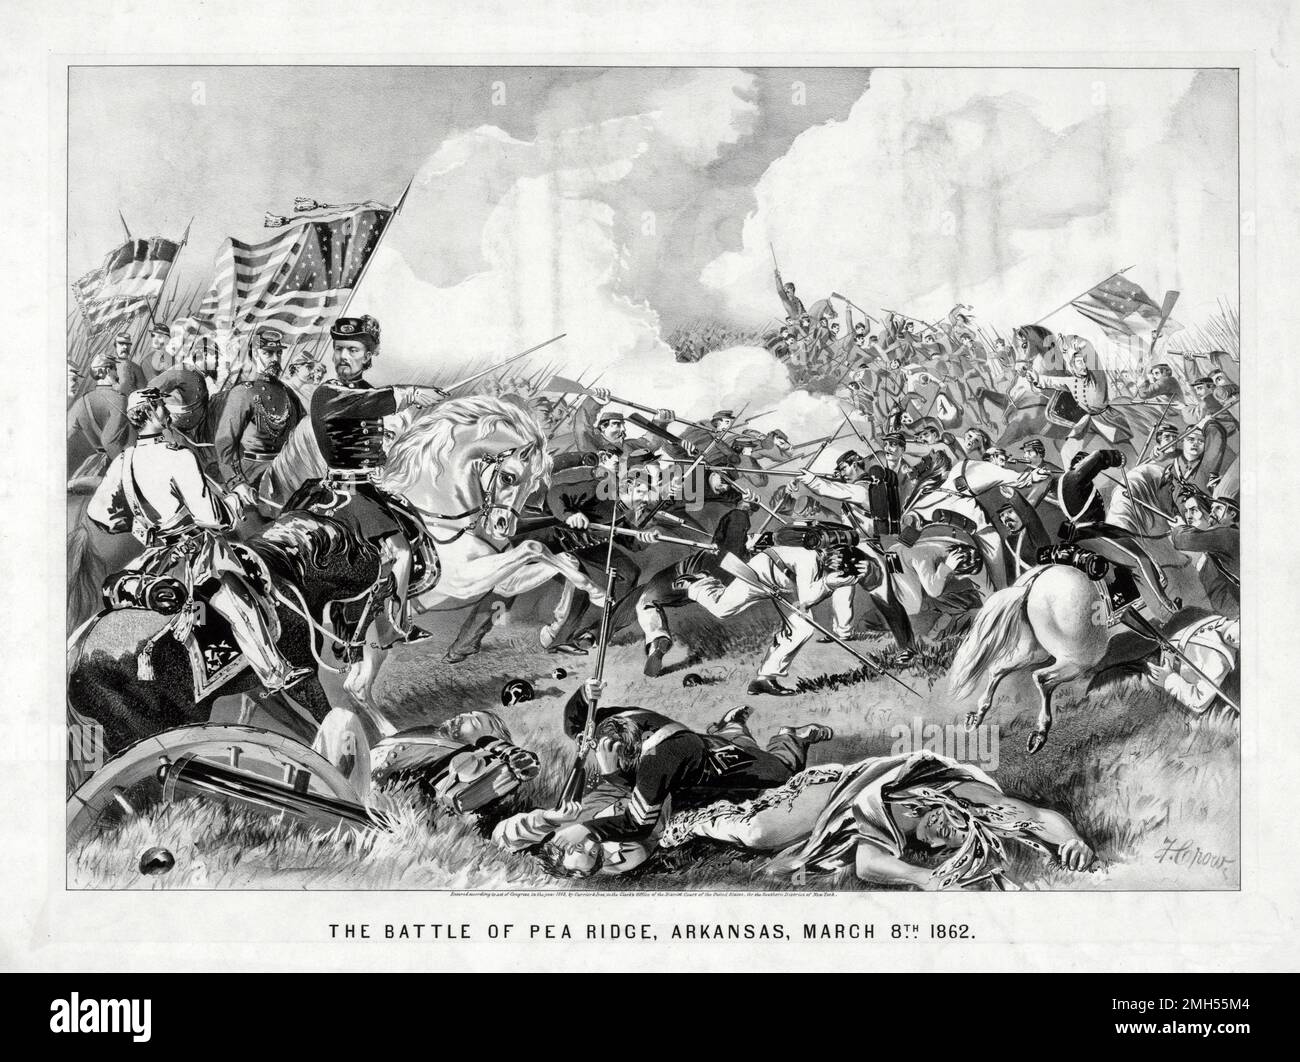 La Batalla de Pea Ridge (La Batalla de Elkhorn Tavern) fue una batalla en la Guerra Civil Americana que se libró del 7 al 8th de marzo de 1862 en Arkansas. El asalto estuvo bajo el mando de Samuel Curtis, y fue una victoria unionista. Foto de stock